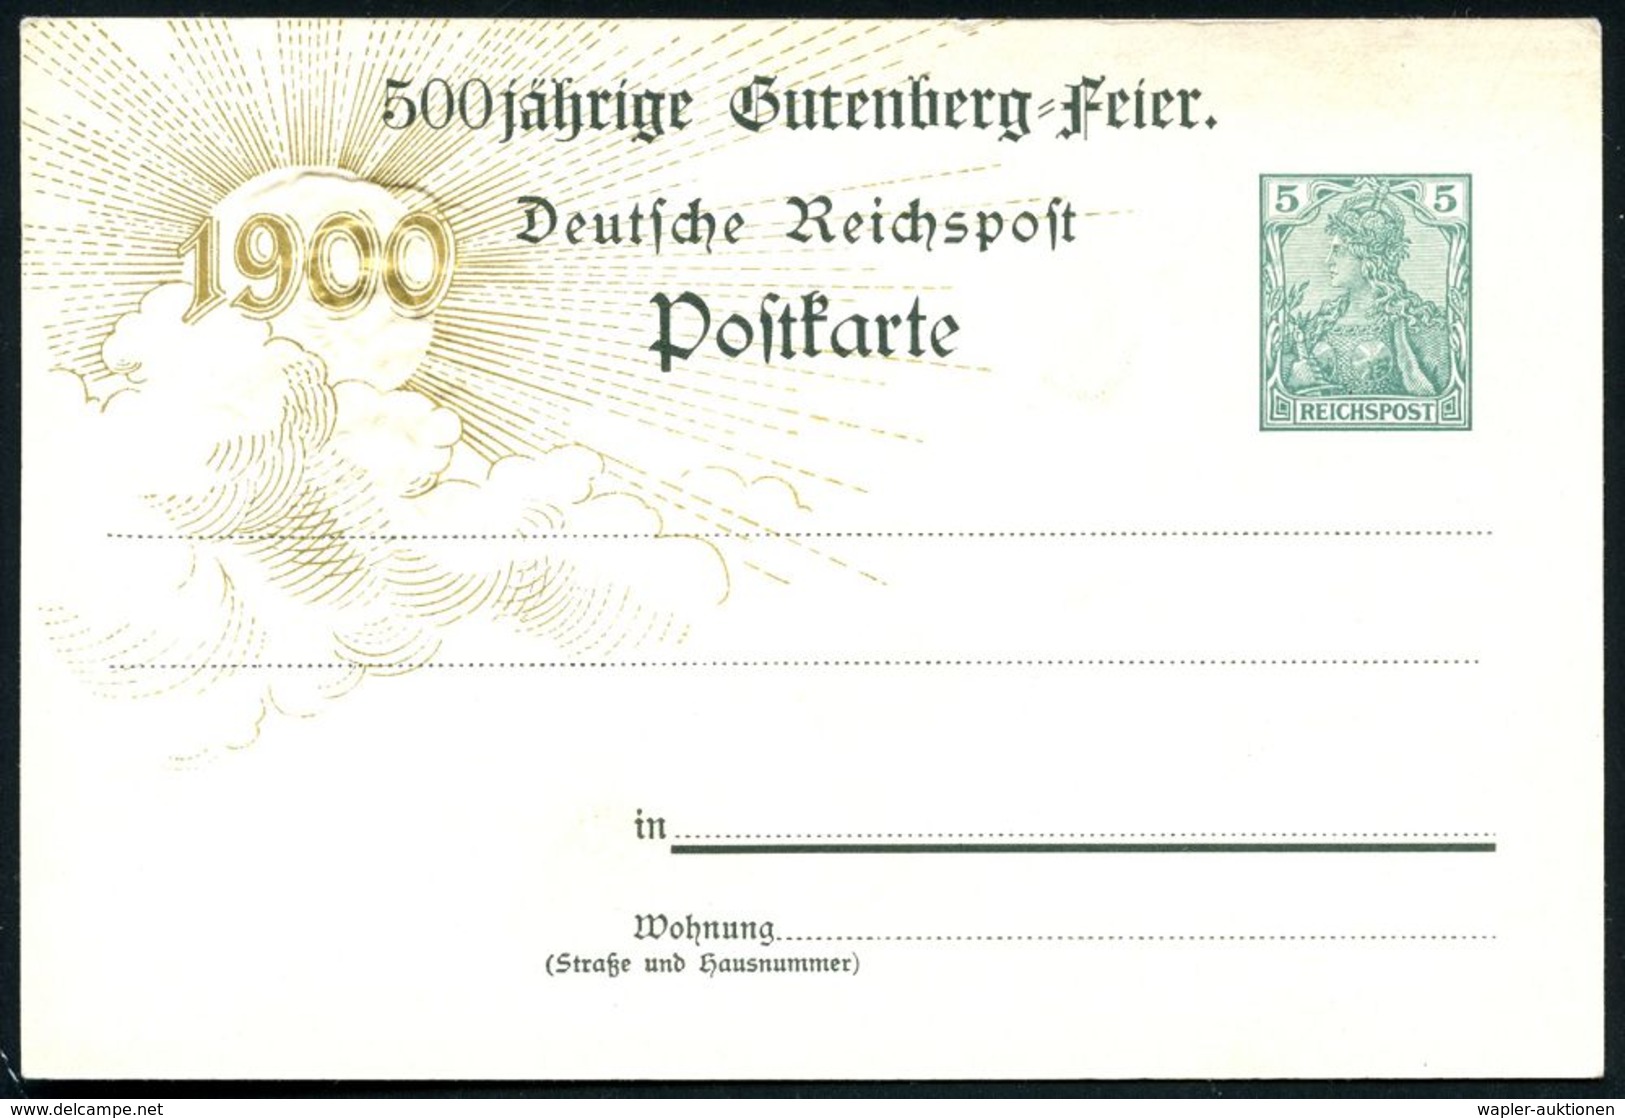 Mainz 1900 PP 5 Pf. Germania "1900": 500 Jährige Gutenbergfeier MAINZ 1900 = Gutenbergdenkmal, Histor. Drucker, Mainz Mi - Non Classificati